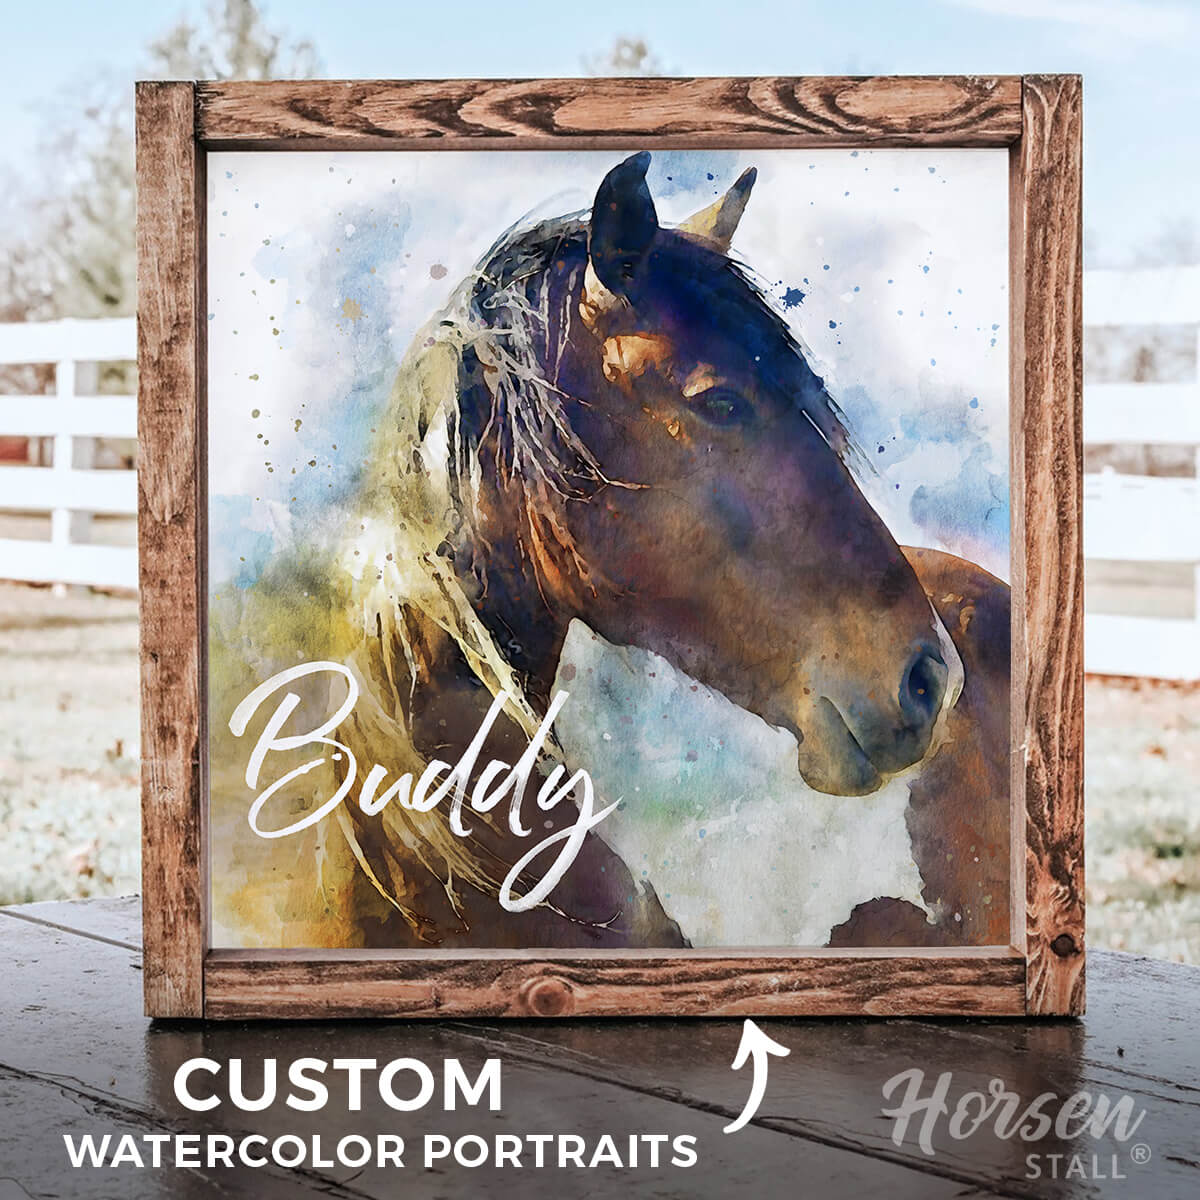 Personalized Watercolor Horse Portrait